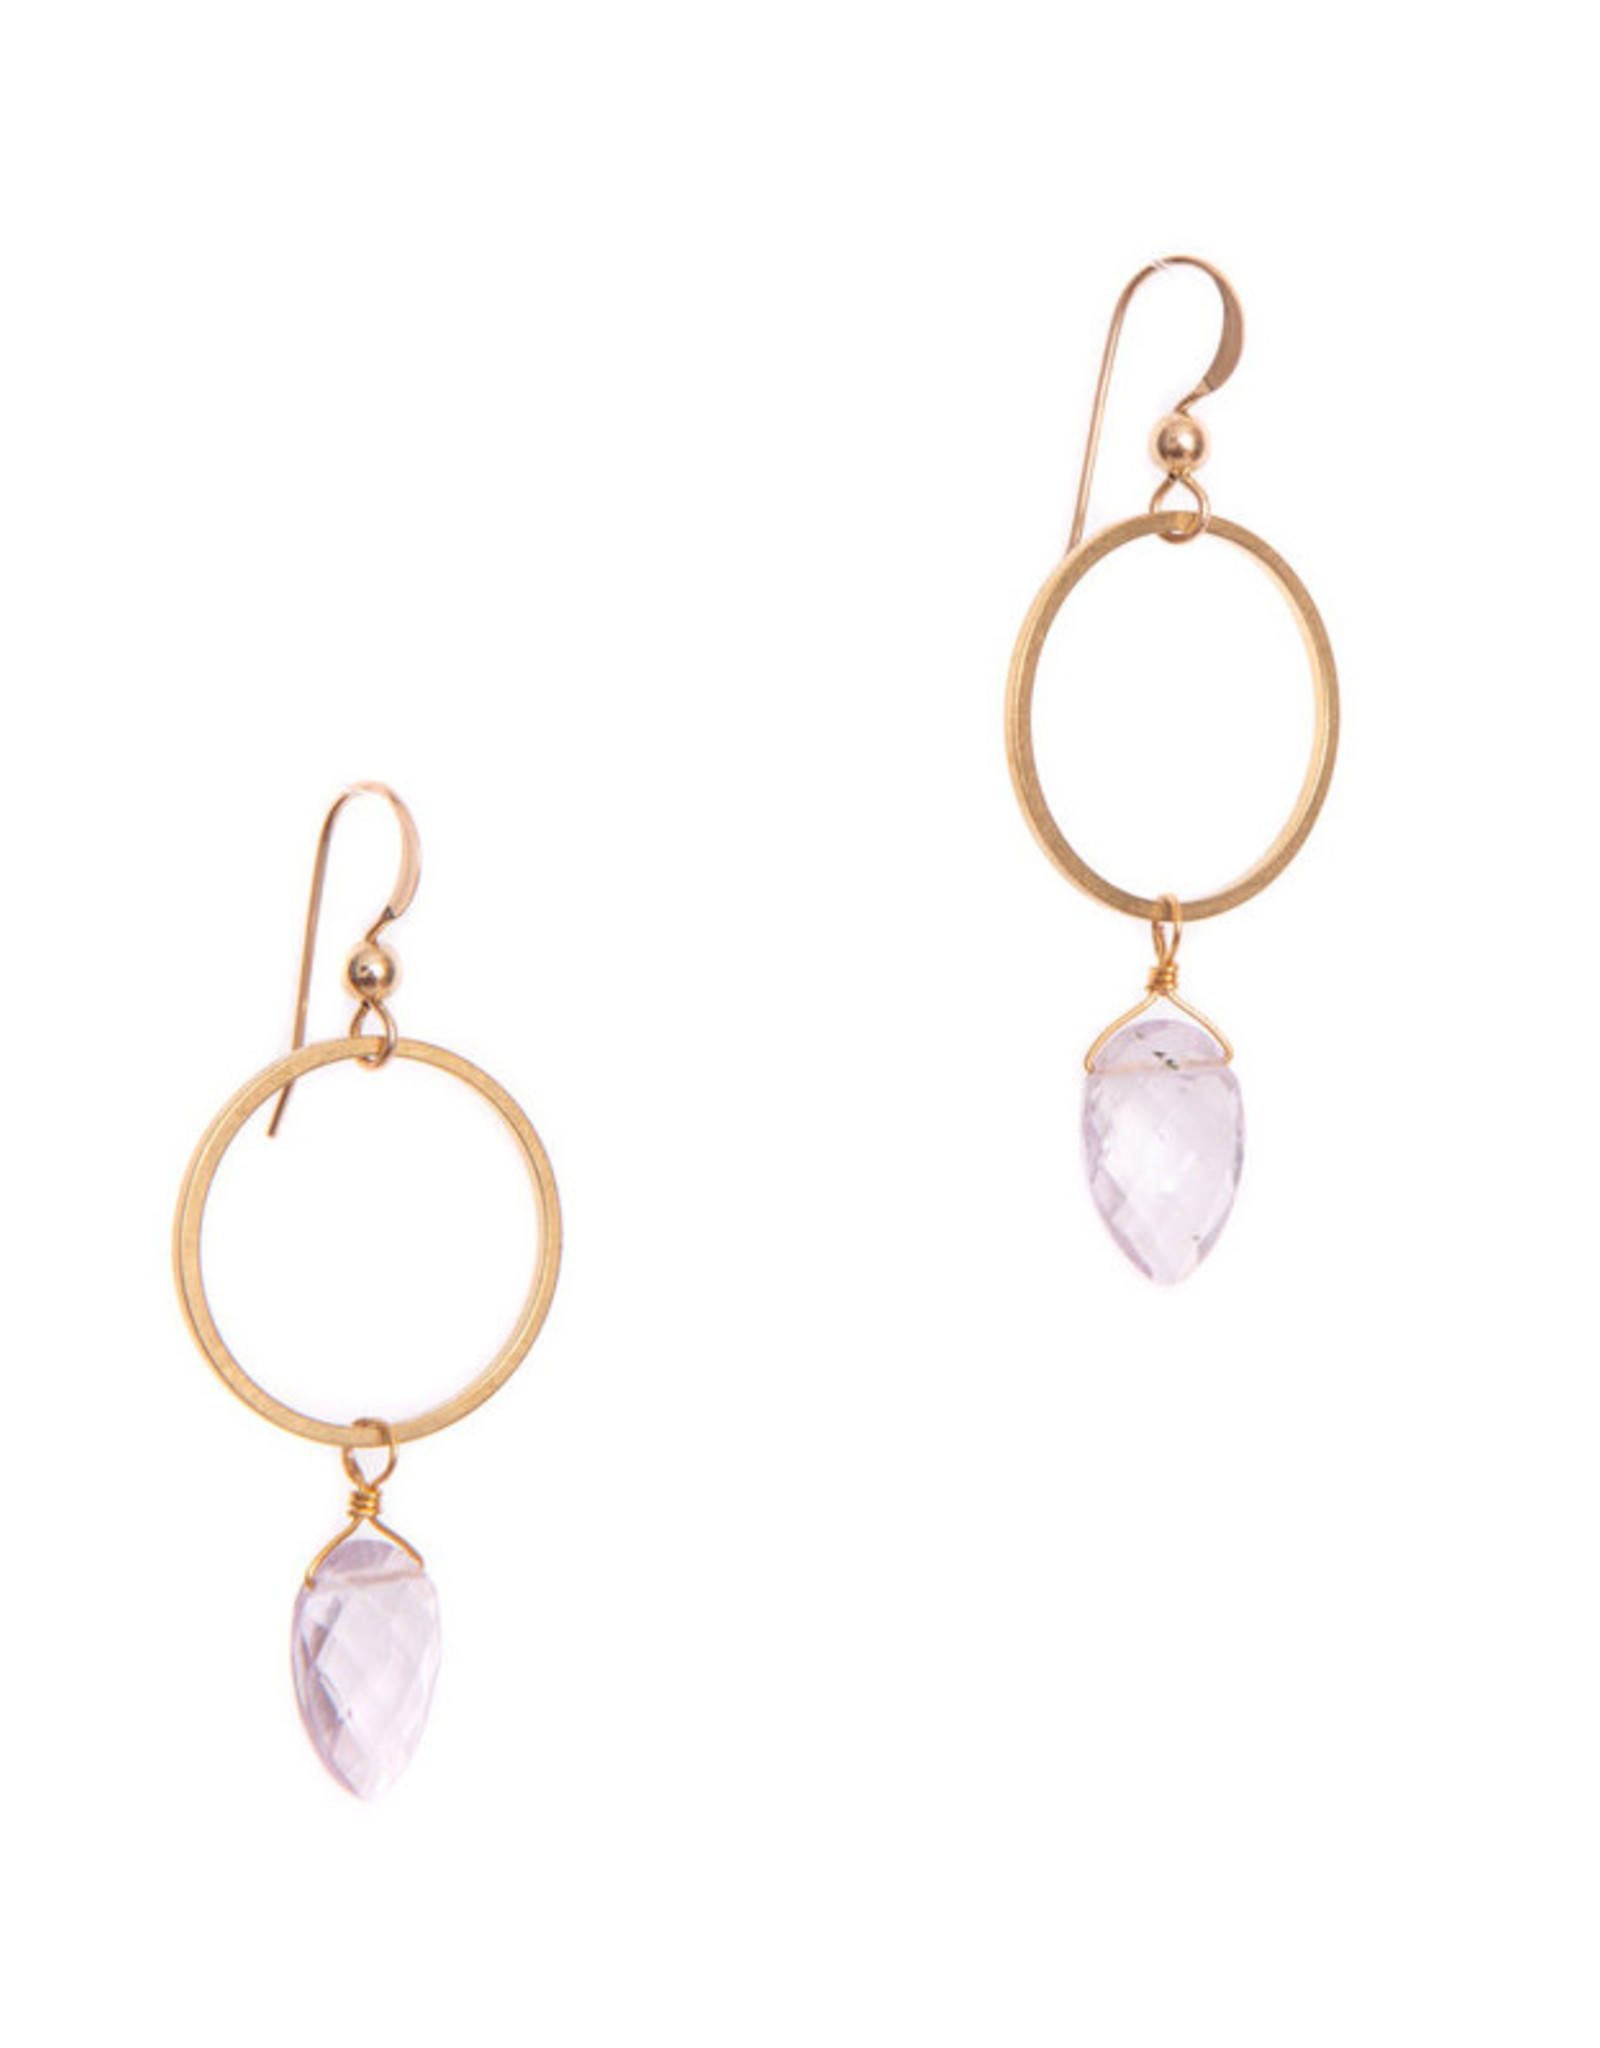 Hailey Gerrits Designs Rhea Earrings - Pink Amethyst